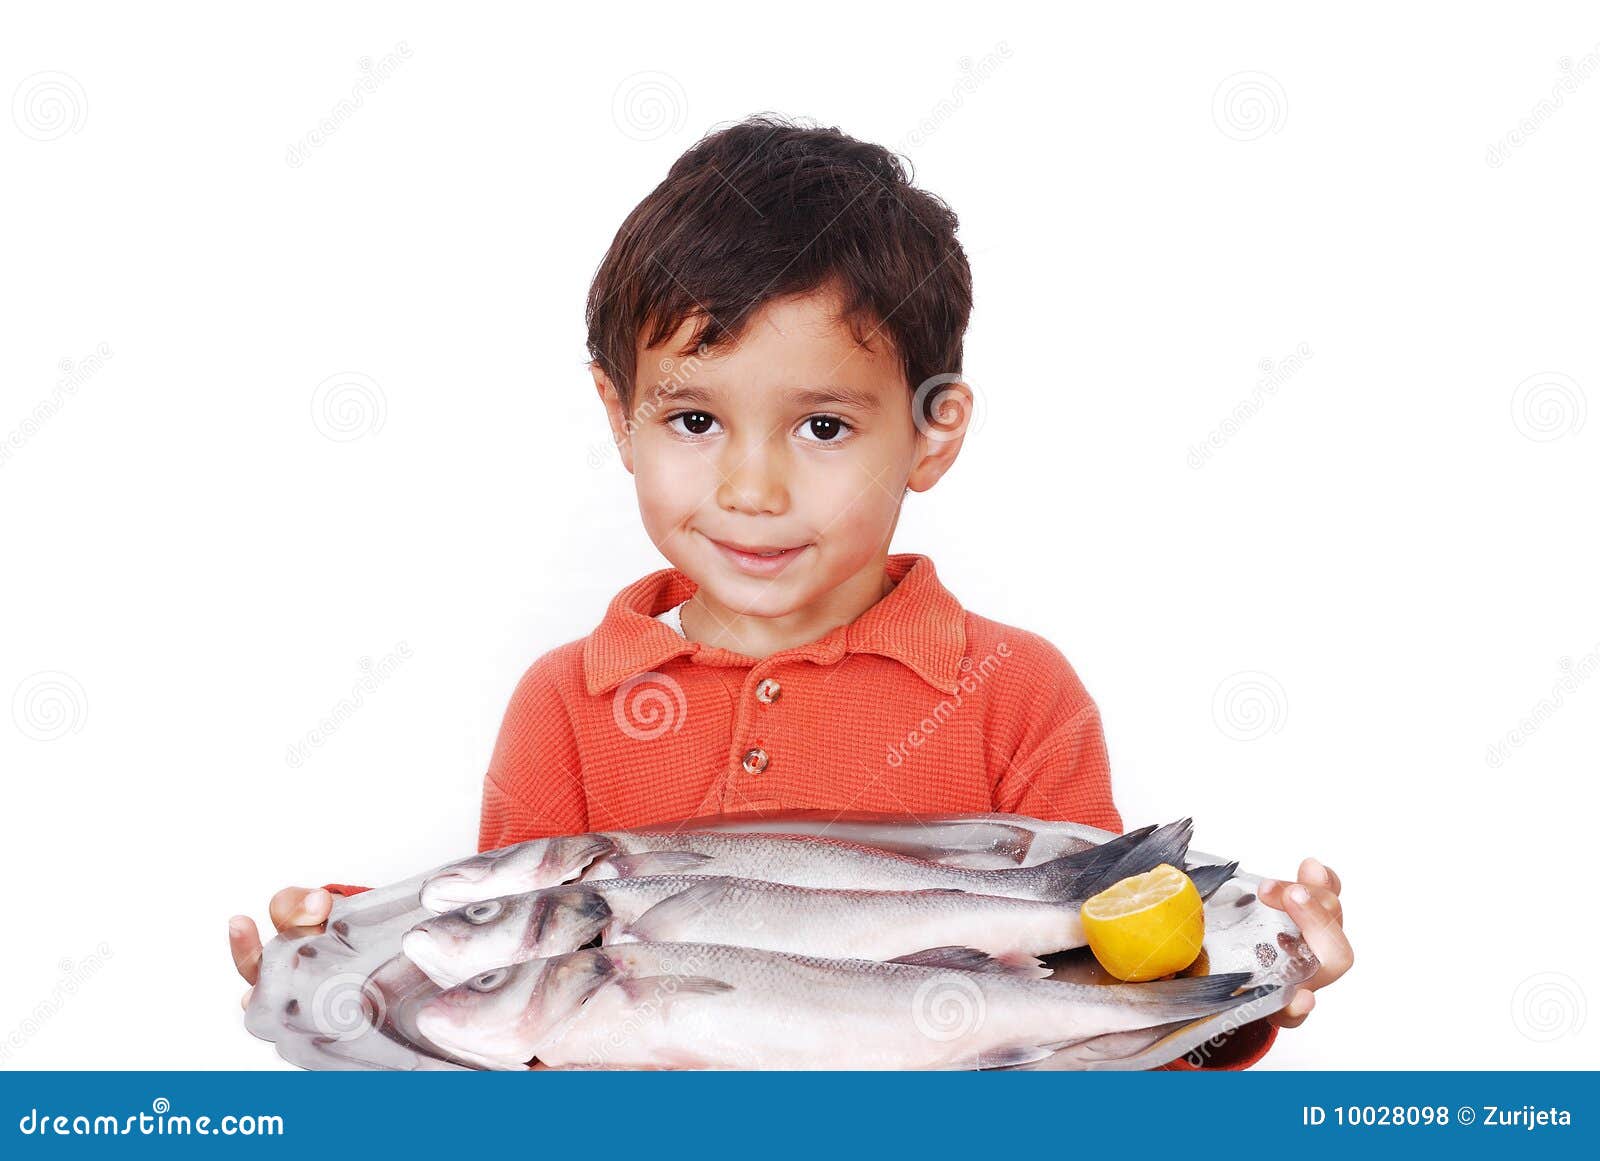 Мальчик рыба какой он